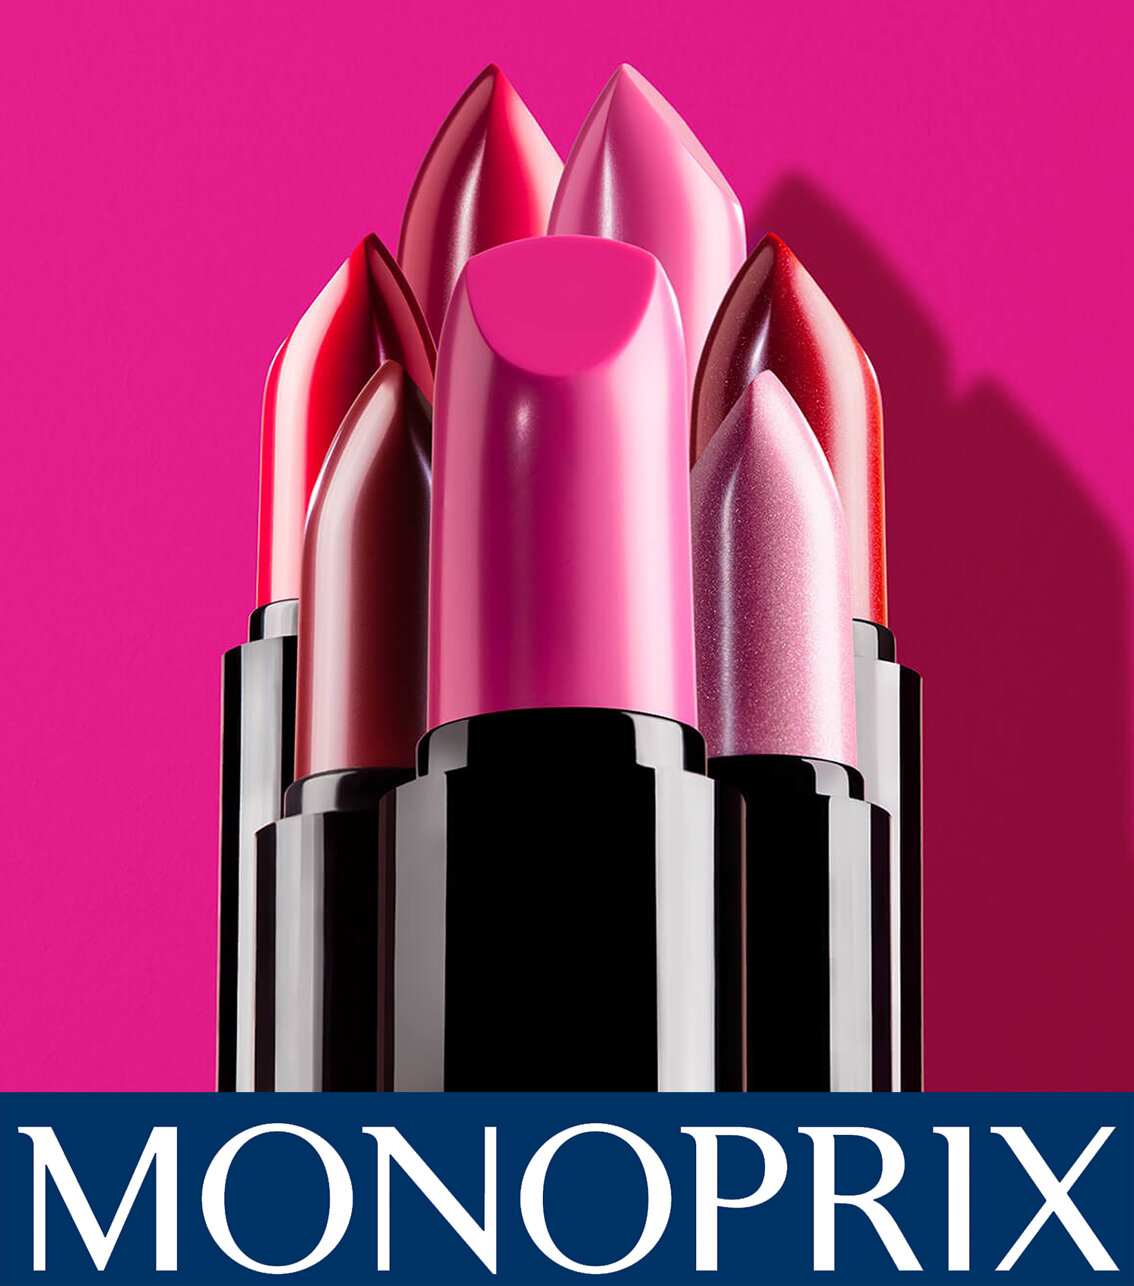 Ad Campaign for Monoprix Paris